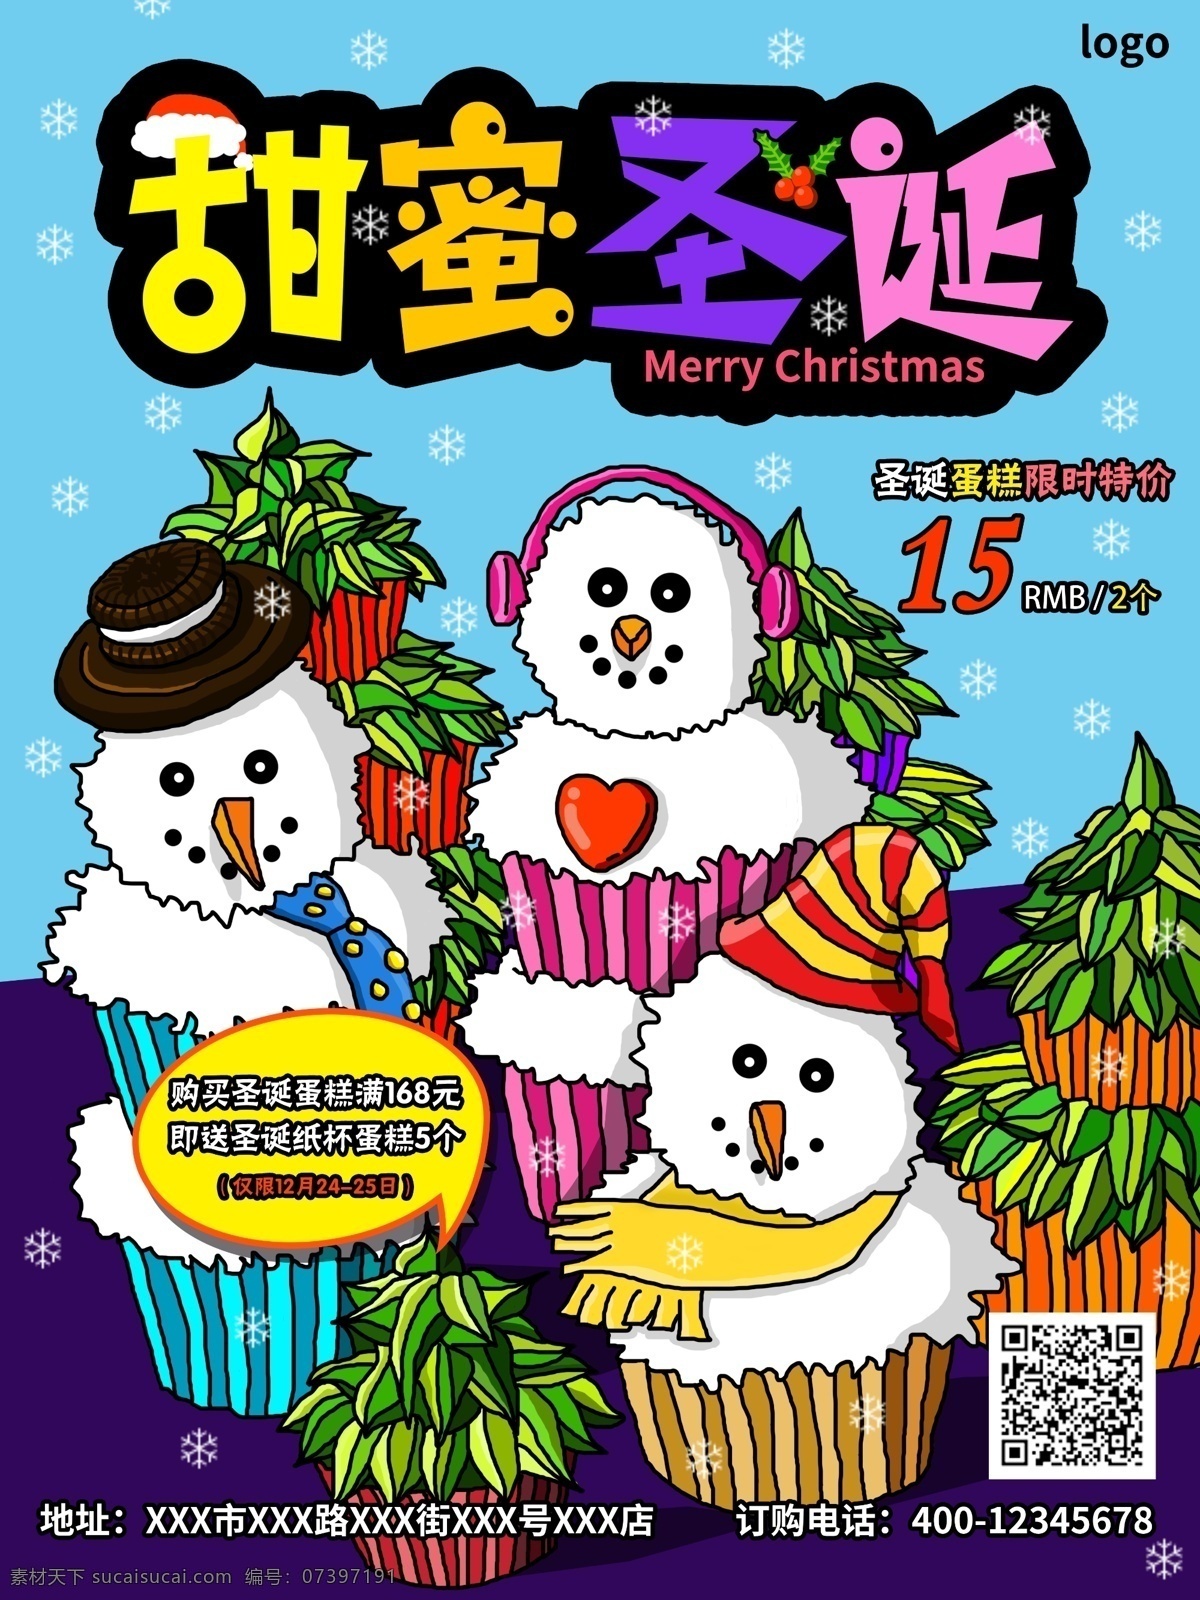 手绘 插画 圣诞节 甜品 海报 宣传单 蛋糕 圣诞树 雪花 雪人 帽子 甜蜜 圣诞 促销活动